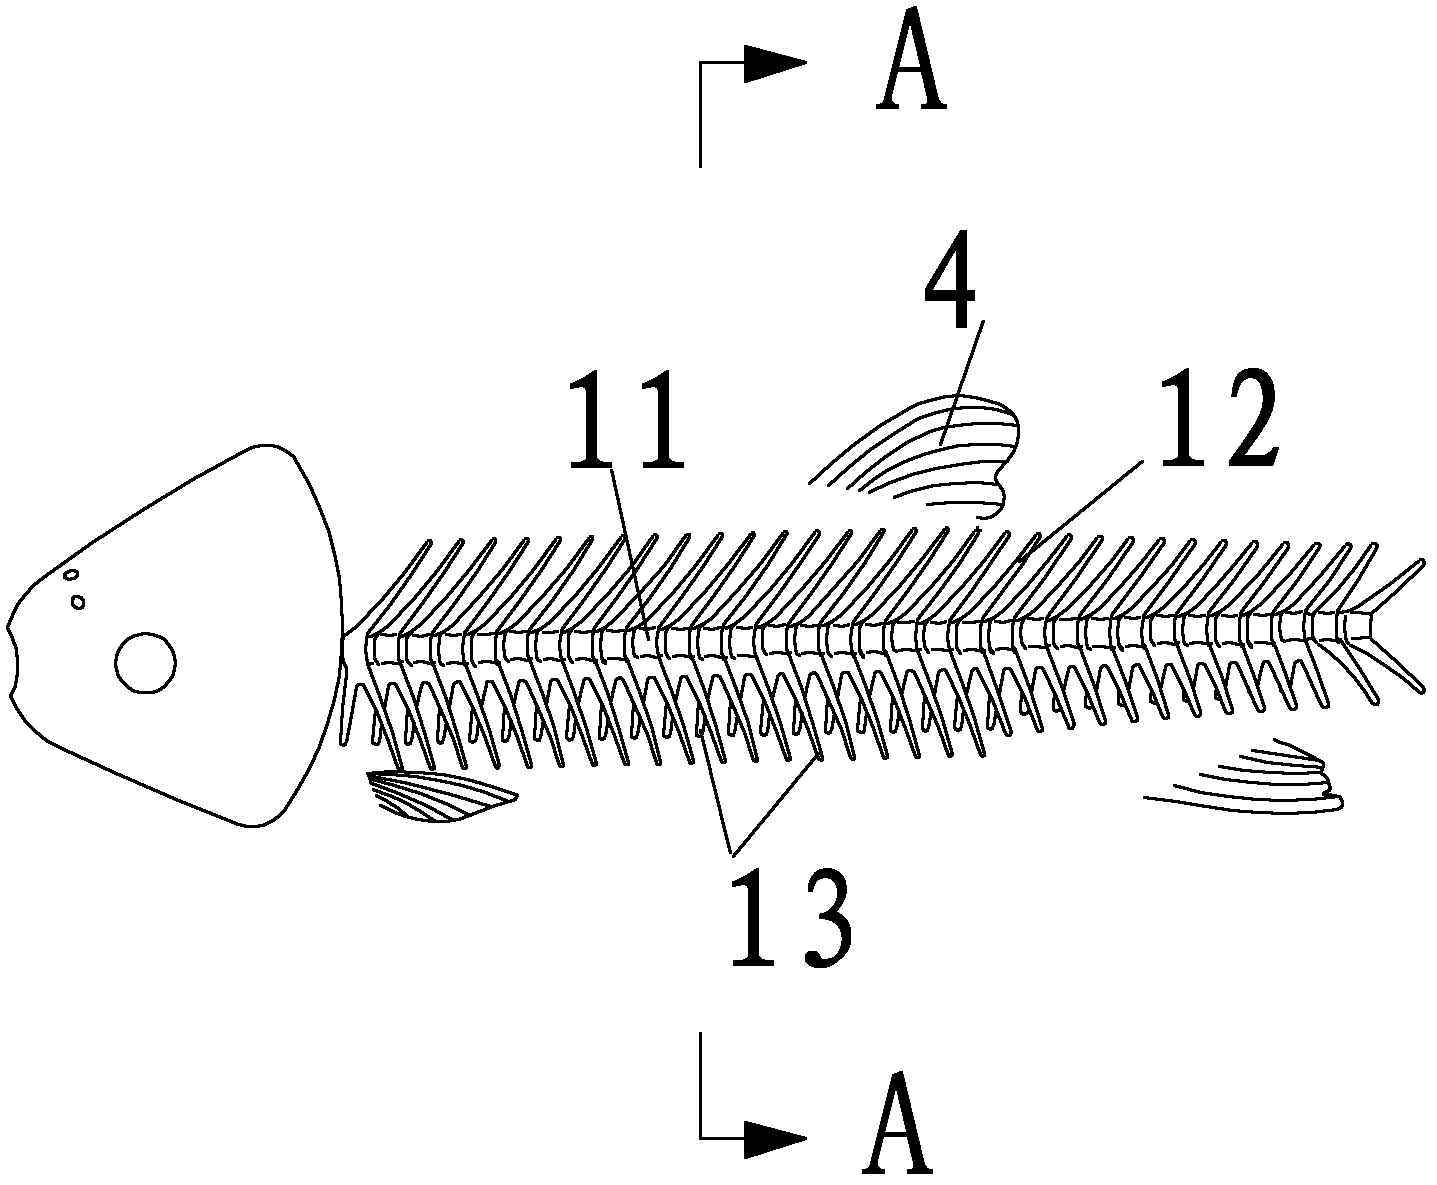 Method for separating loin from backbone meat of crisp grass carp